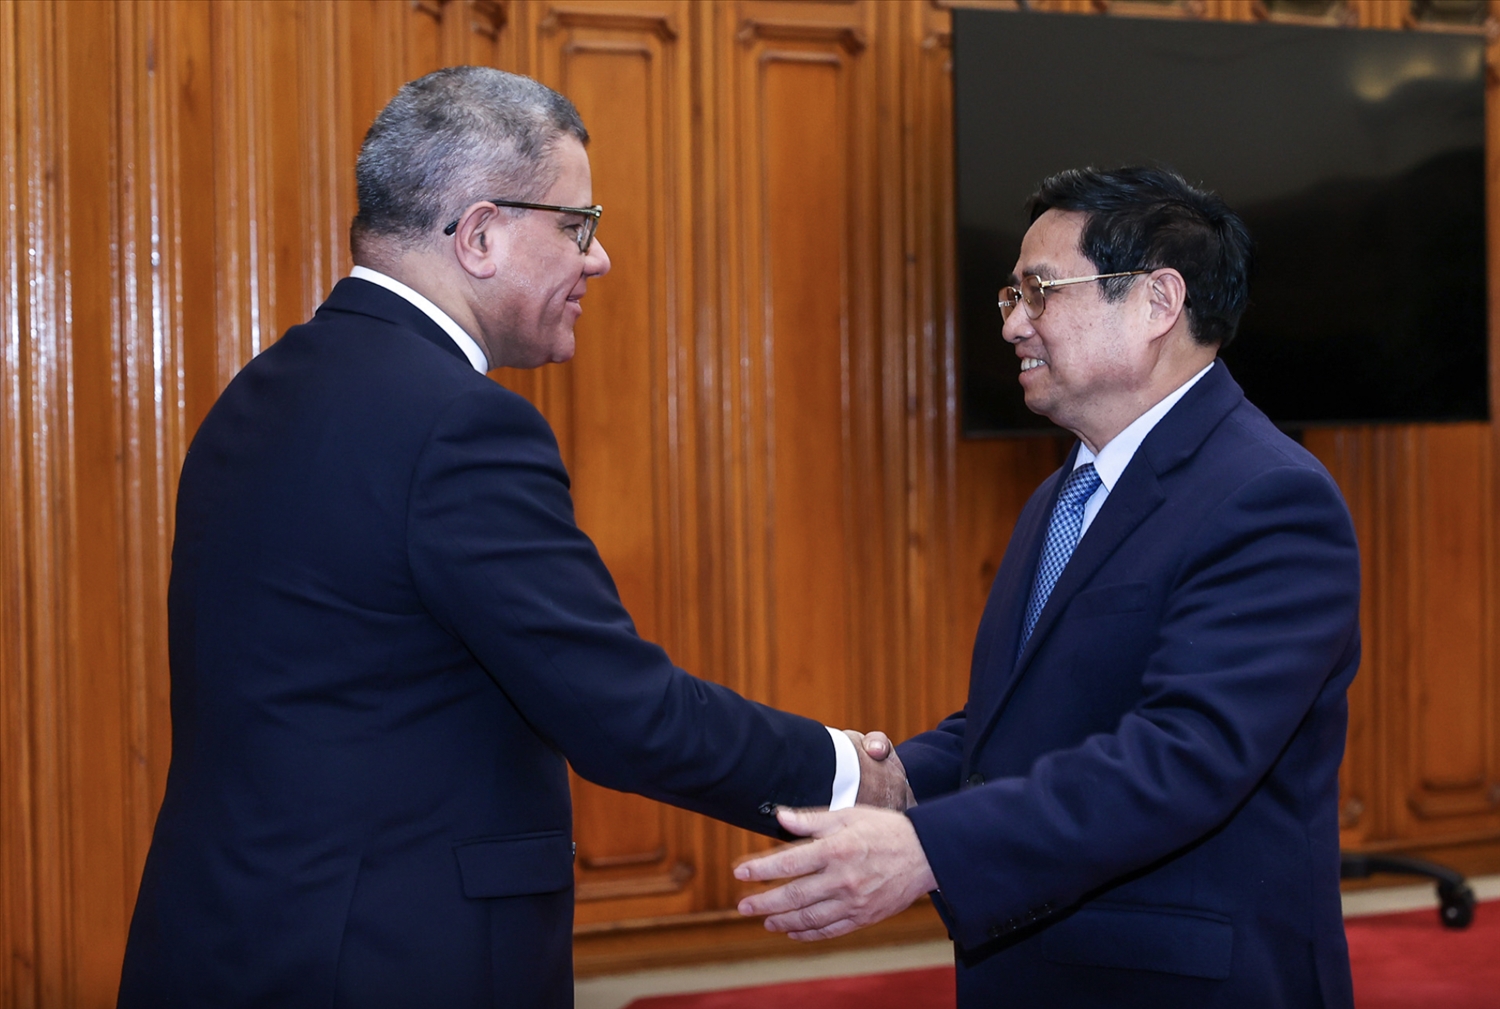 Thủ tướng Phạm Minh Chính hoan nghênh Bộ trưởng, Chủ tịch COP26 đã chọn Việt Nam là một trong những điểm đến của chuyến công du châu Á - Ảnh: VGP/Nhật Bắc